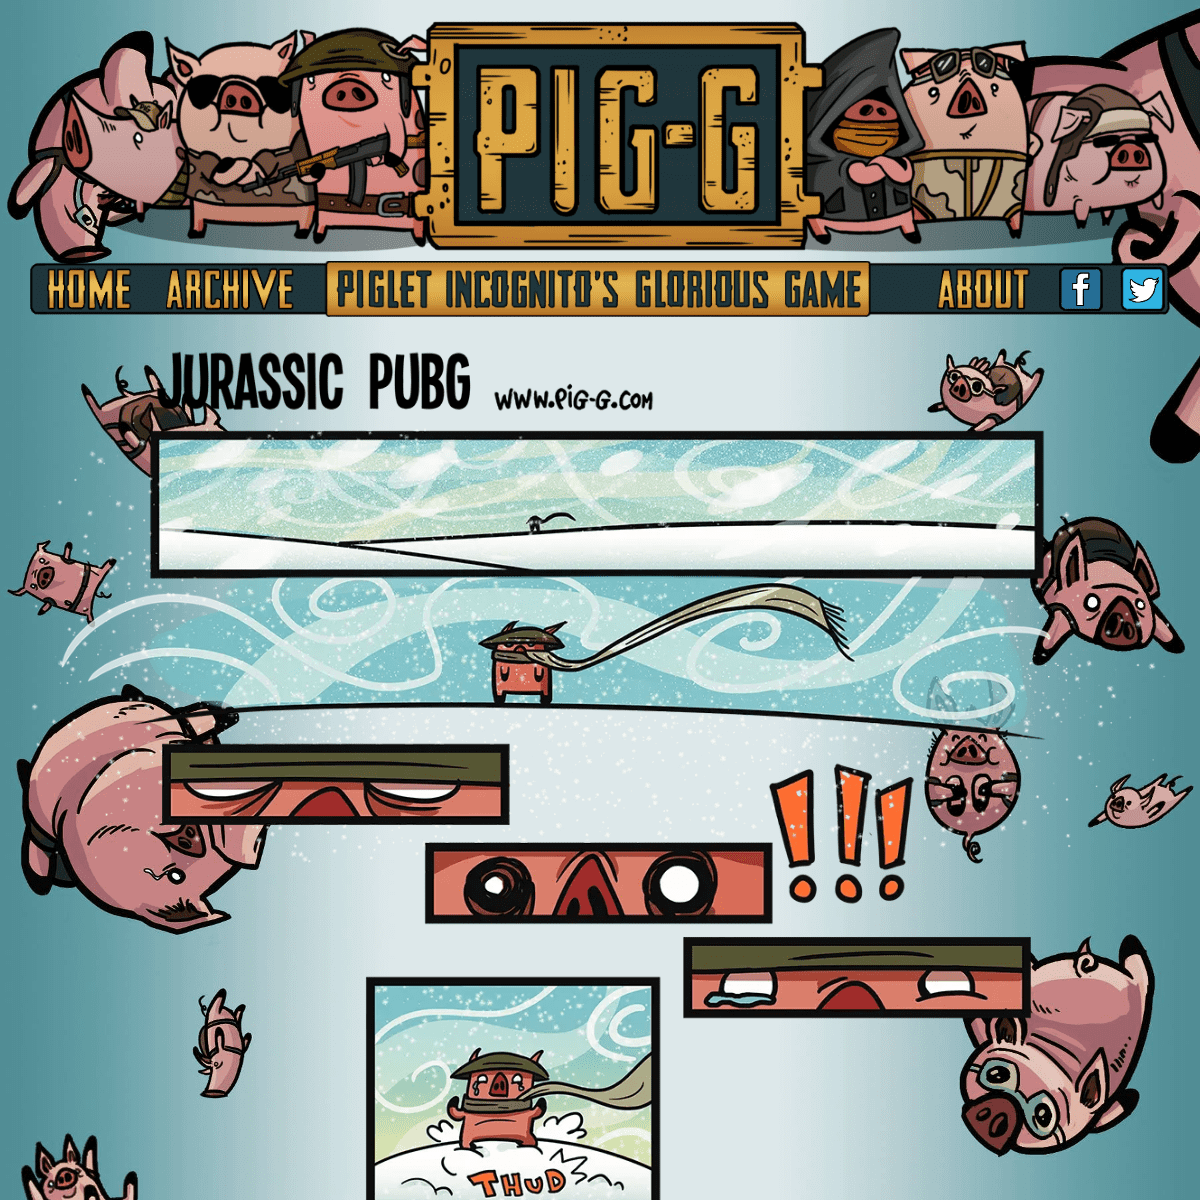 A complete backup of pig-g.com